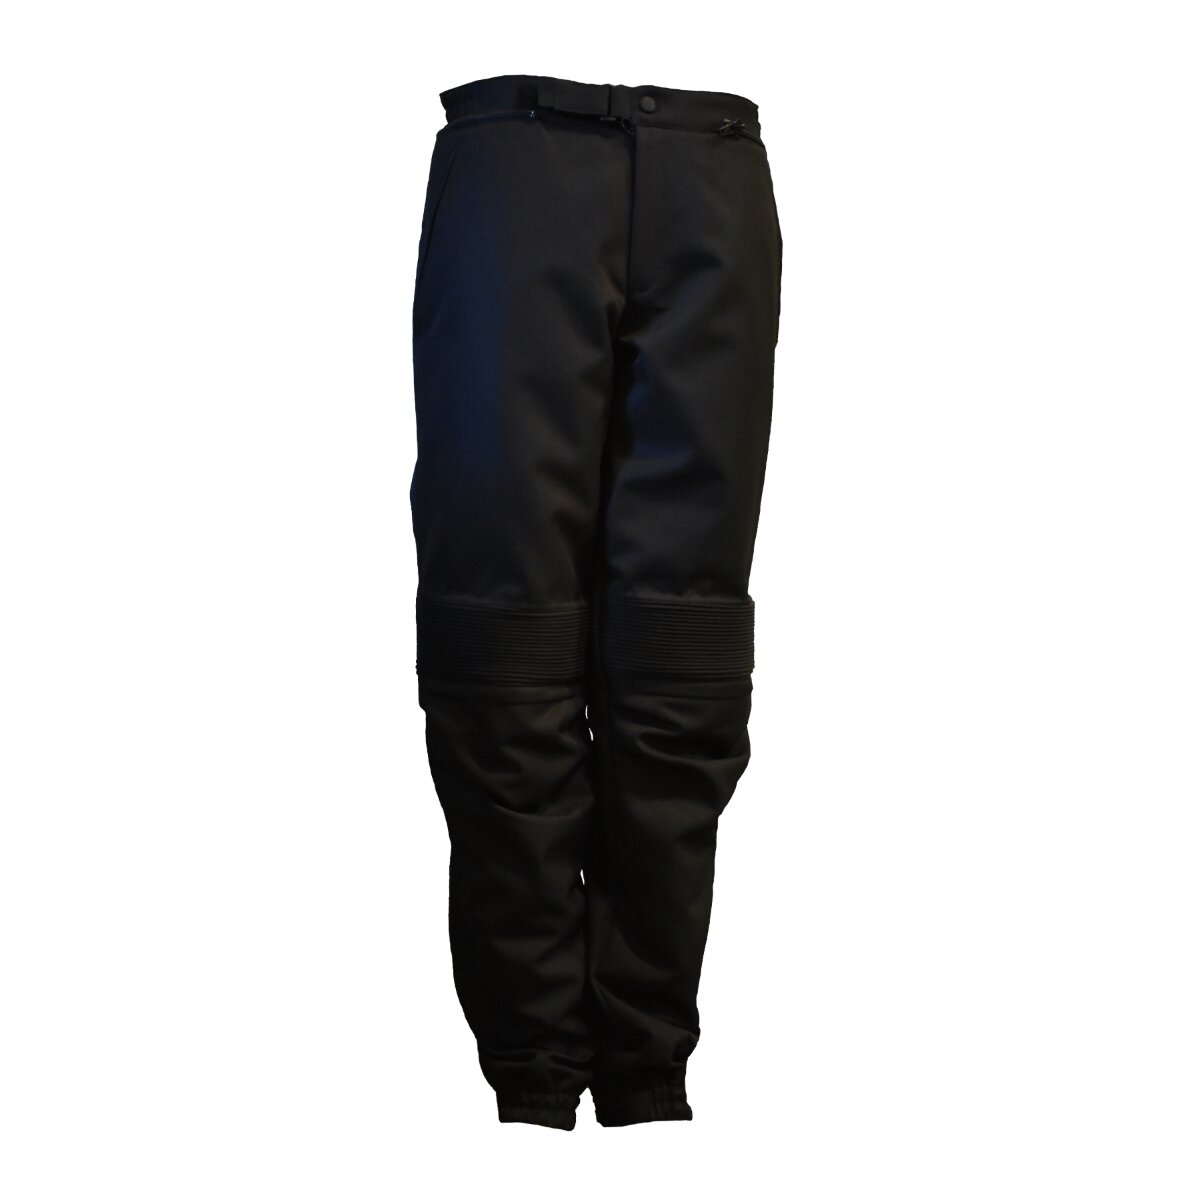 A-PRO Pantalón de pantalón térmico para motociclista de invierno extremo  tex, para motocicleta, hombre, talla M